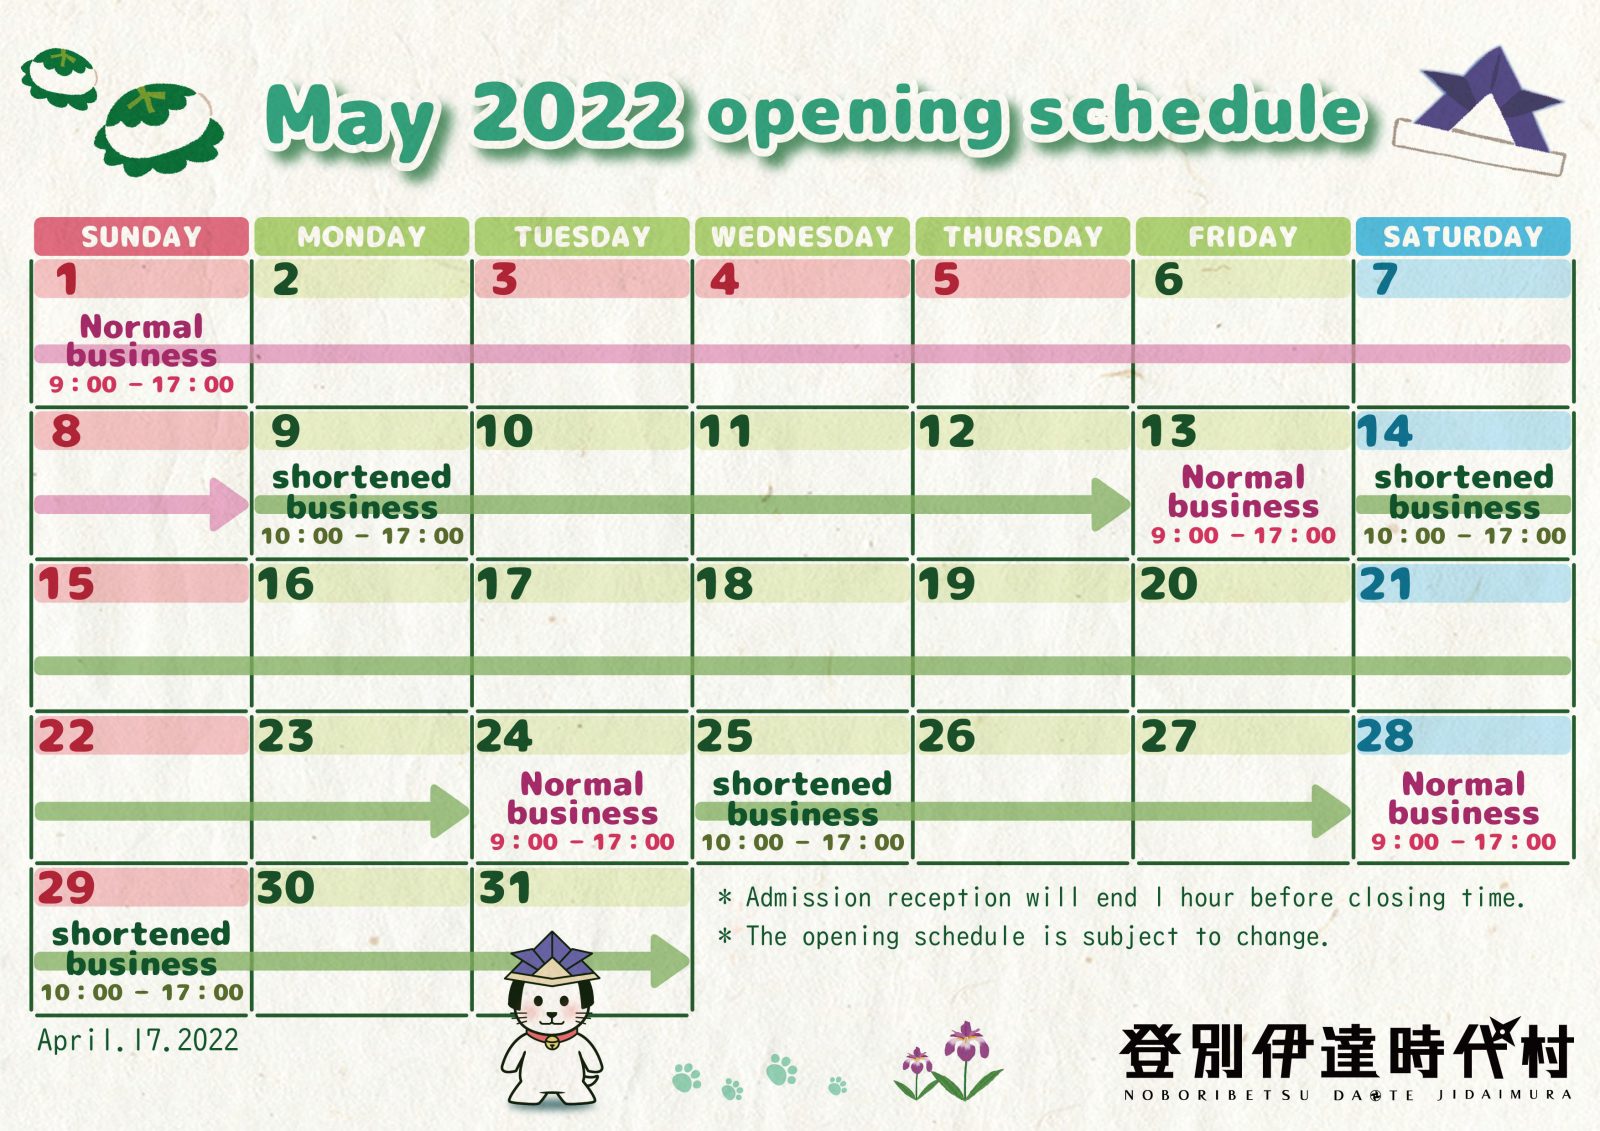 Opening Schedule